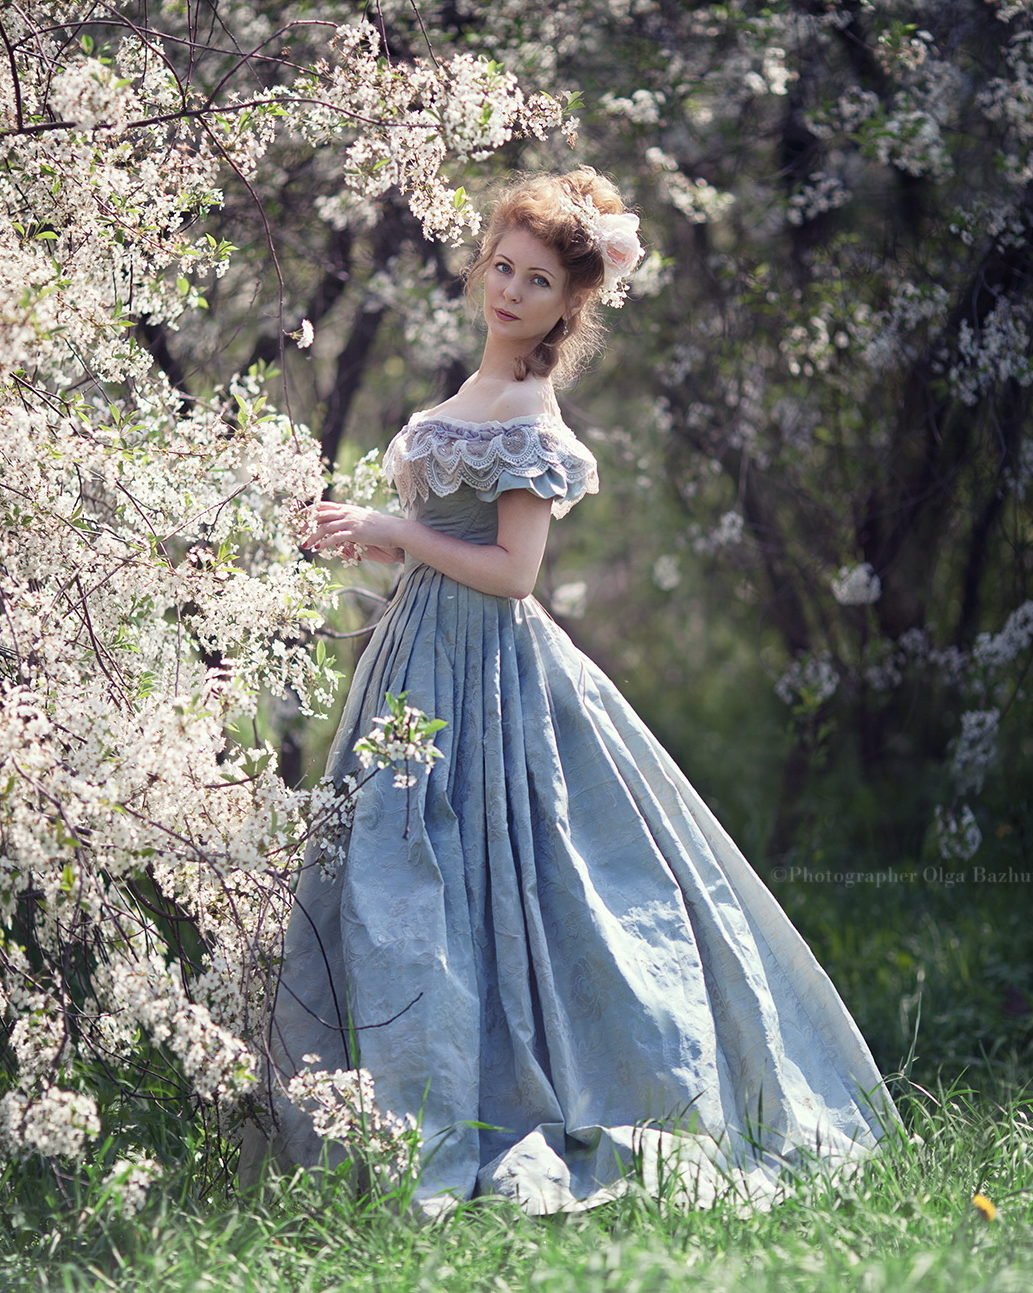 Девушка в платье 19 века